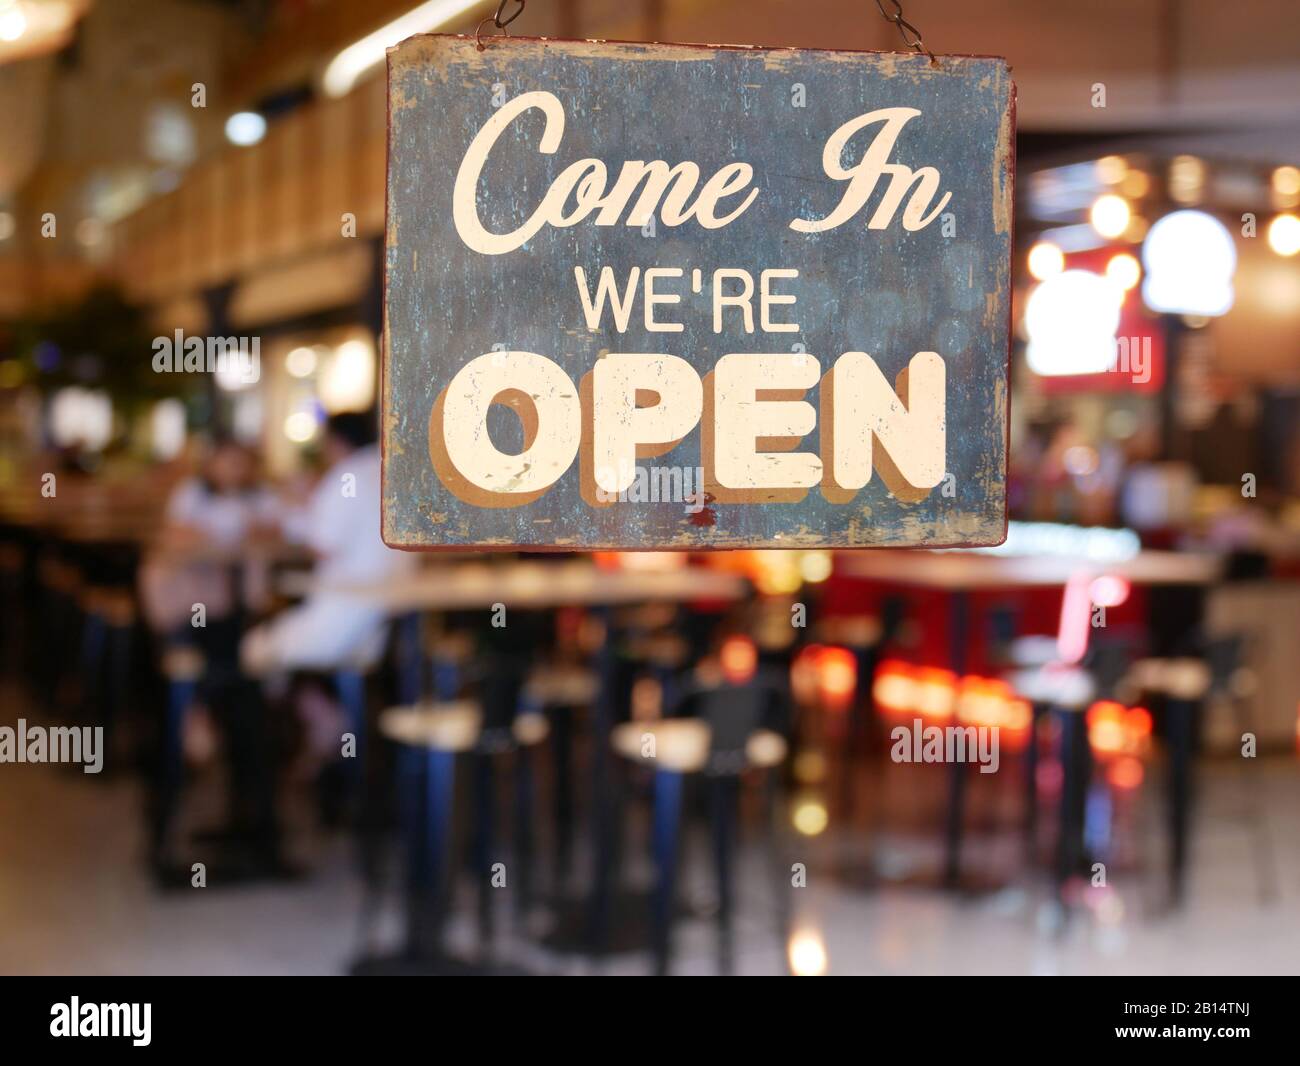 Un signo de la época del negocio que dice "ven en que estamos abiertos" en la ventana del Café / Restaurante. Imagen de restaurante de desenfoque abstracto con la gente. Foto de stock